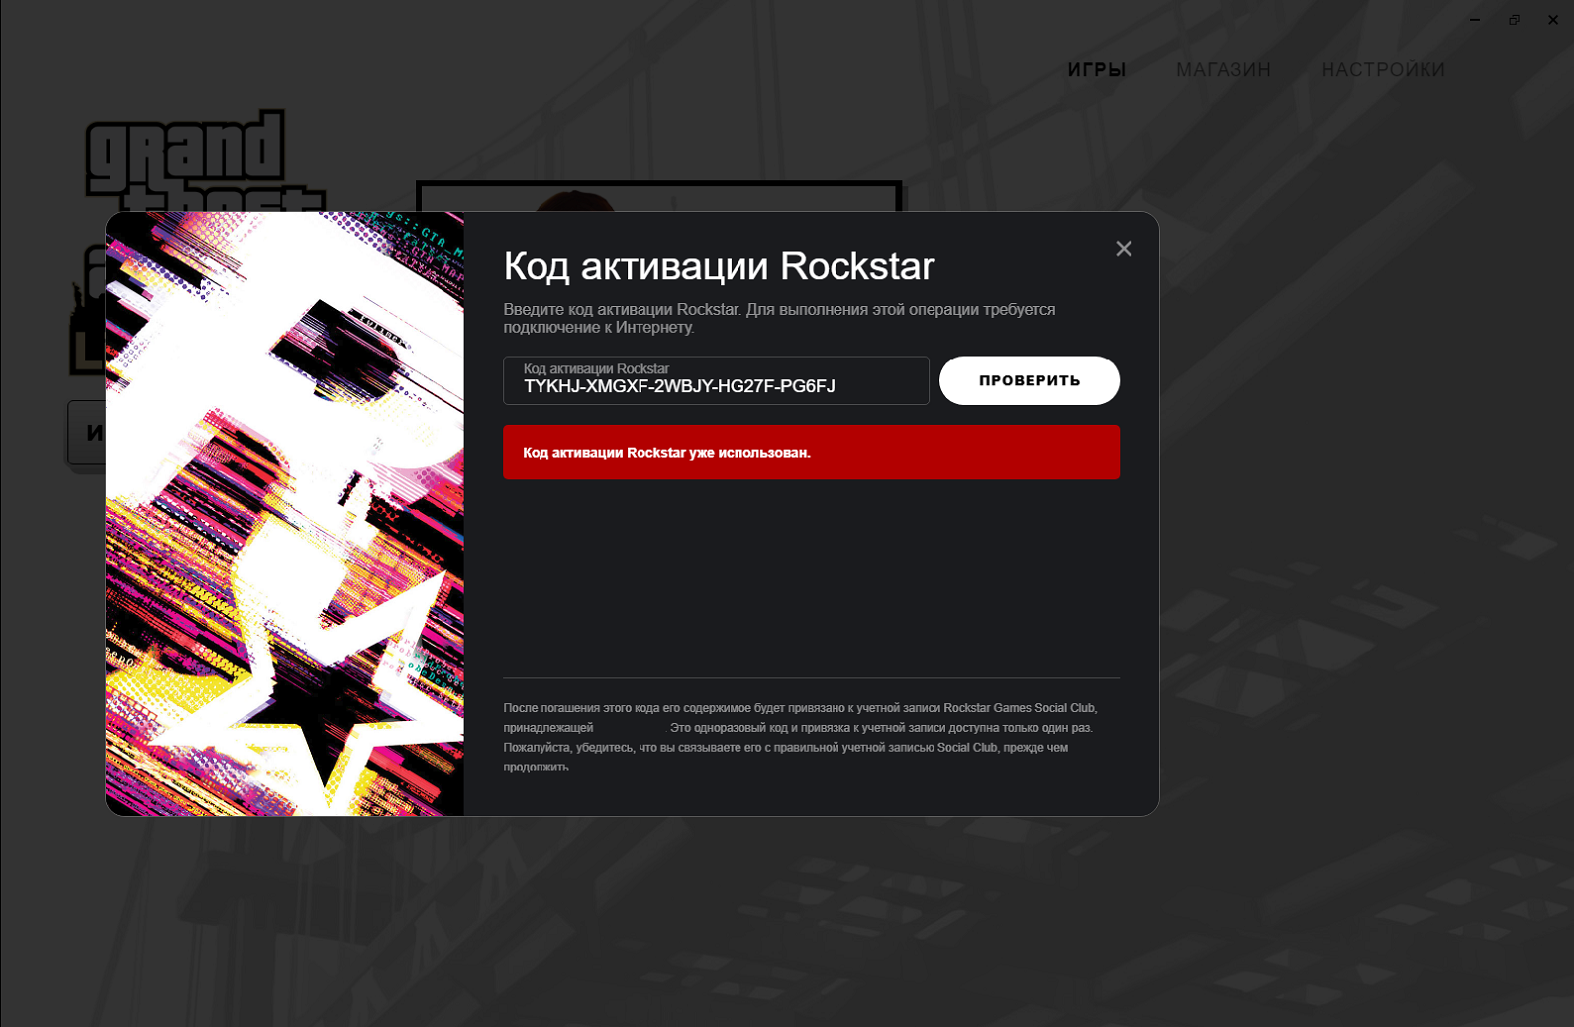 Где взять код rockstar. Рокстар. Код активации Rockstar. Код активации рокстара. Коды активации рокстар.